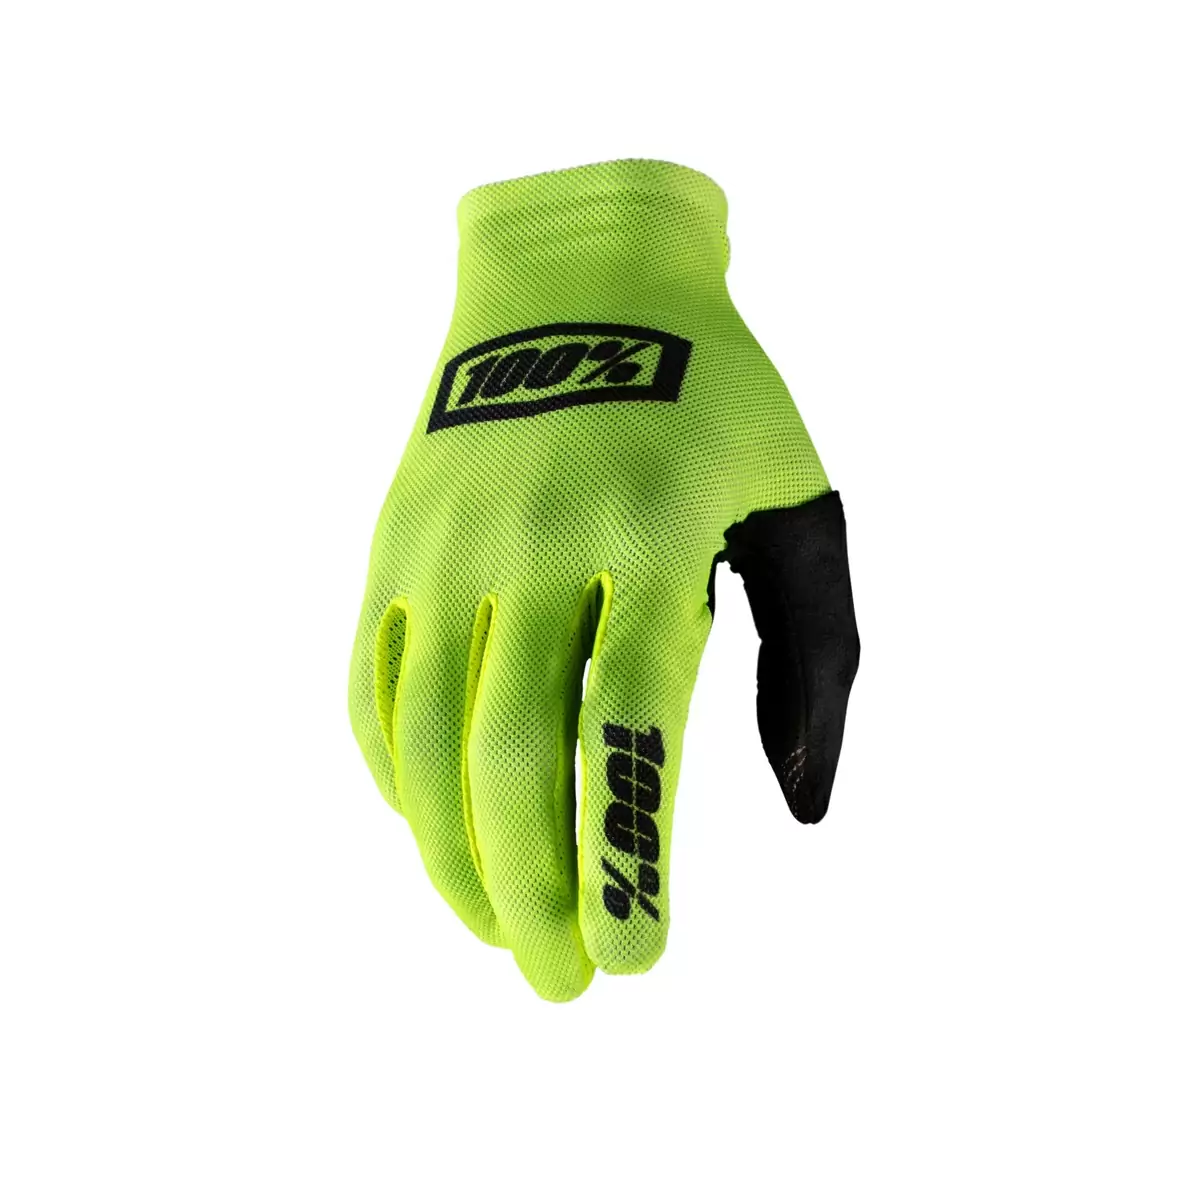 Mtb Gloves Celium Neon Yellow Size M - image